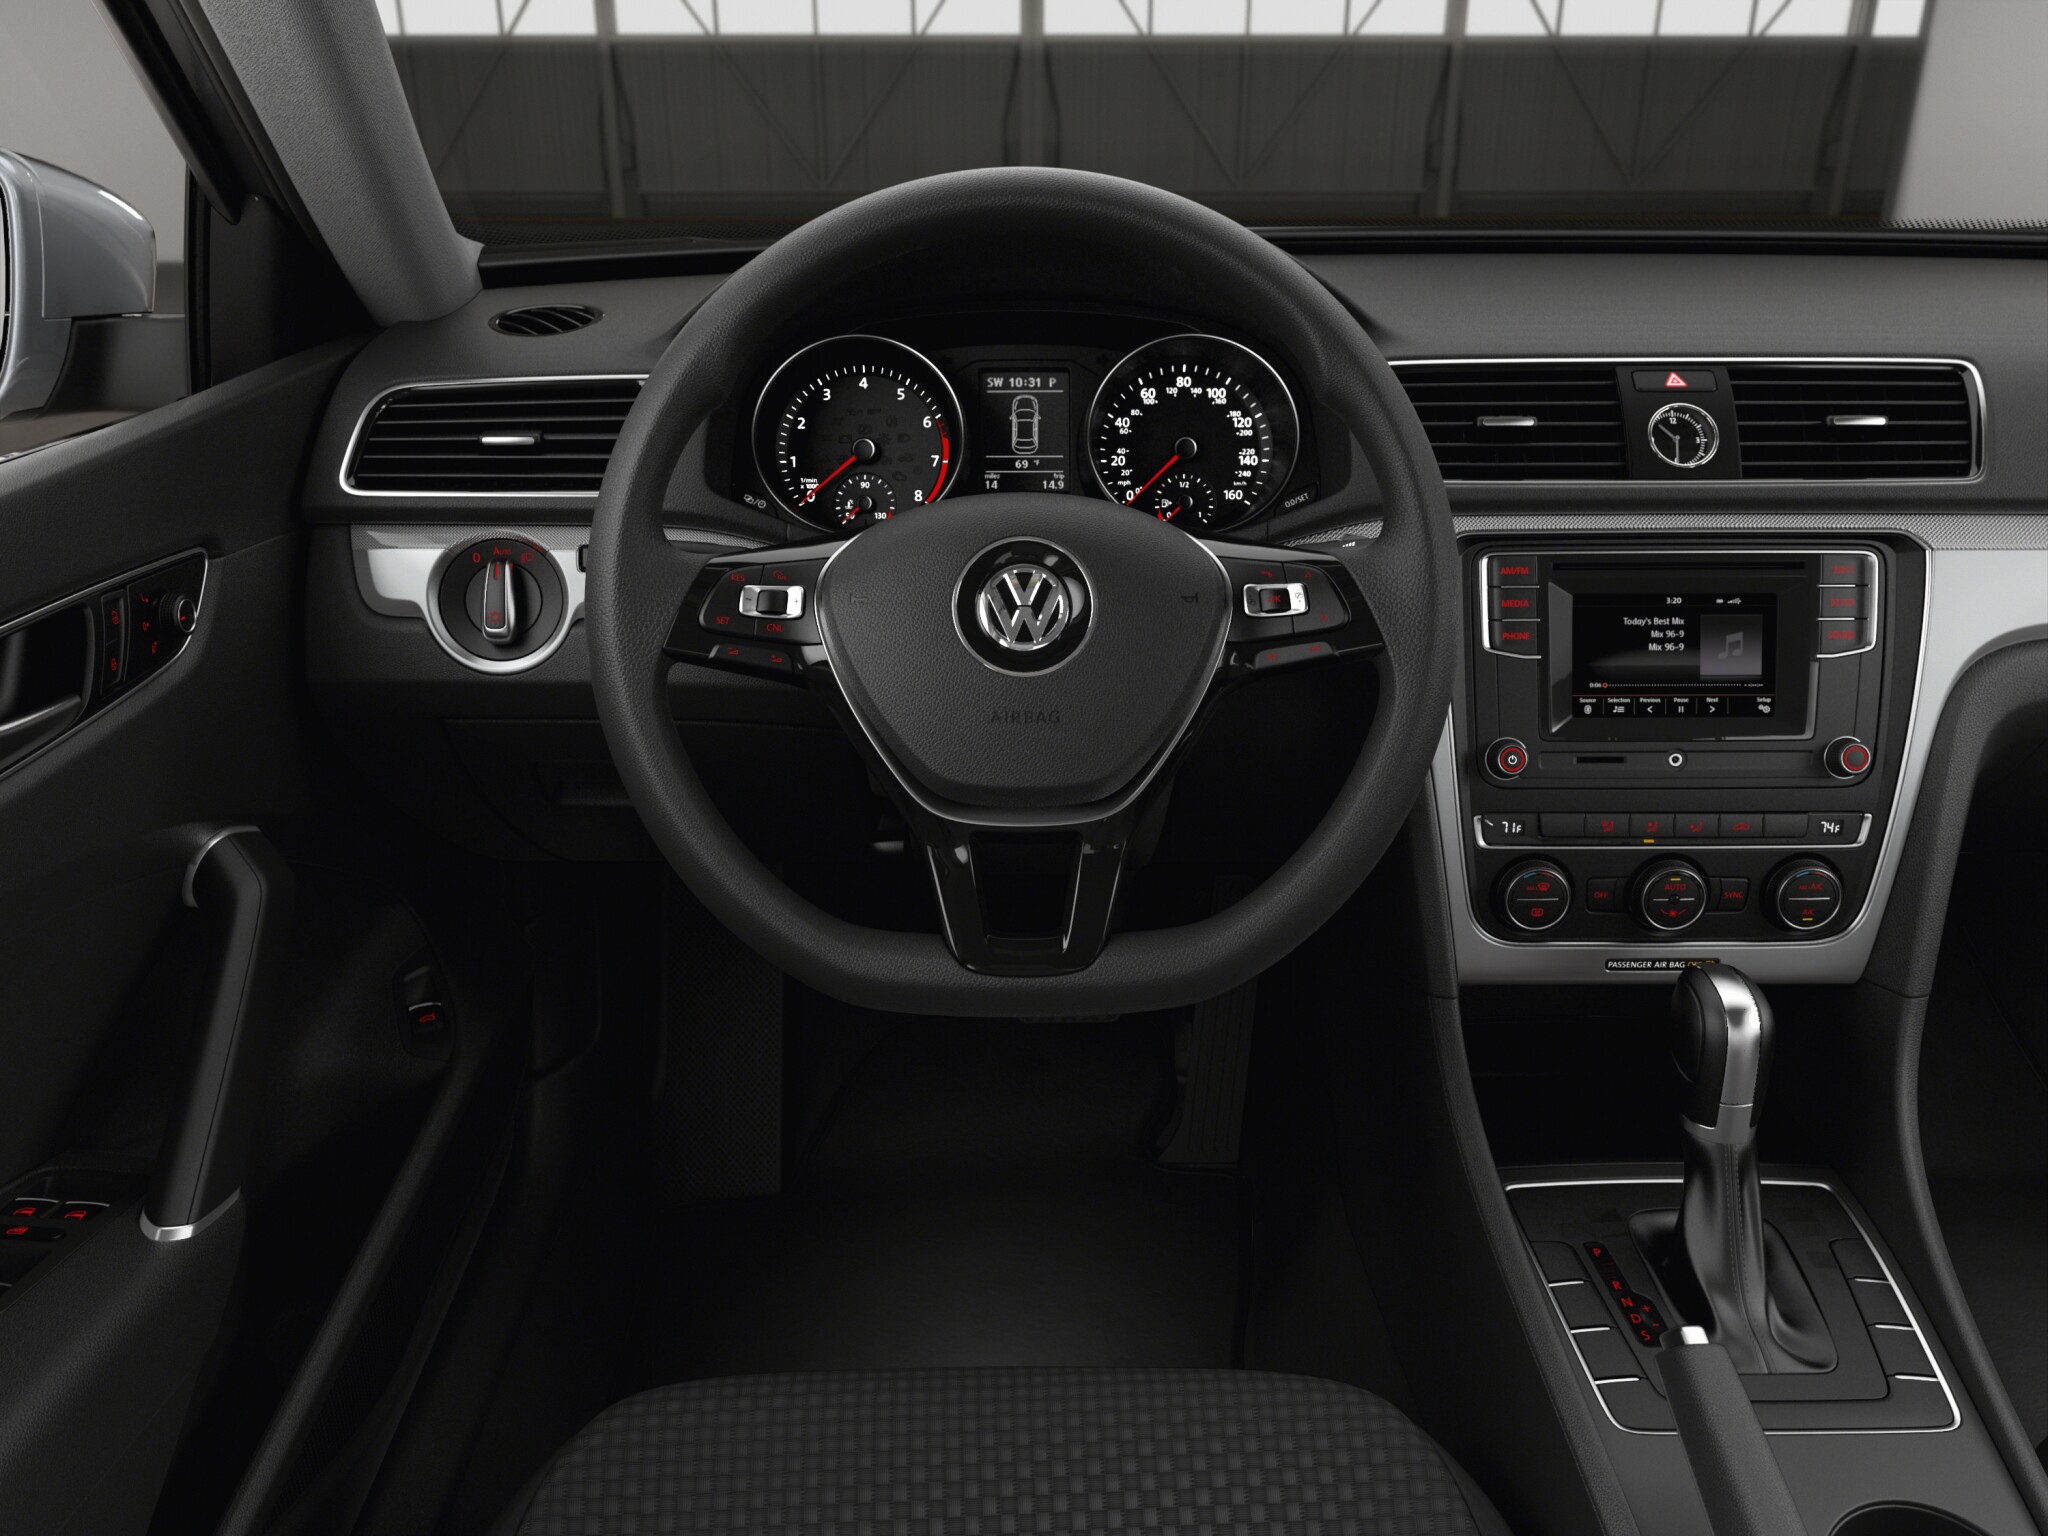 Volkswagen Passat 1.8T SE interior front view